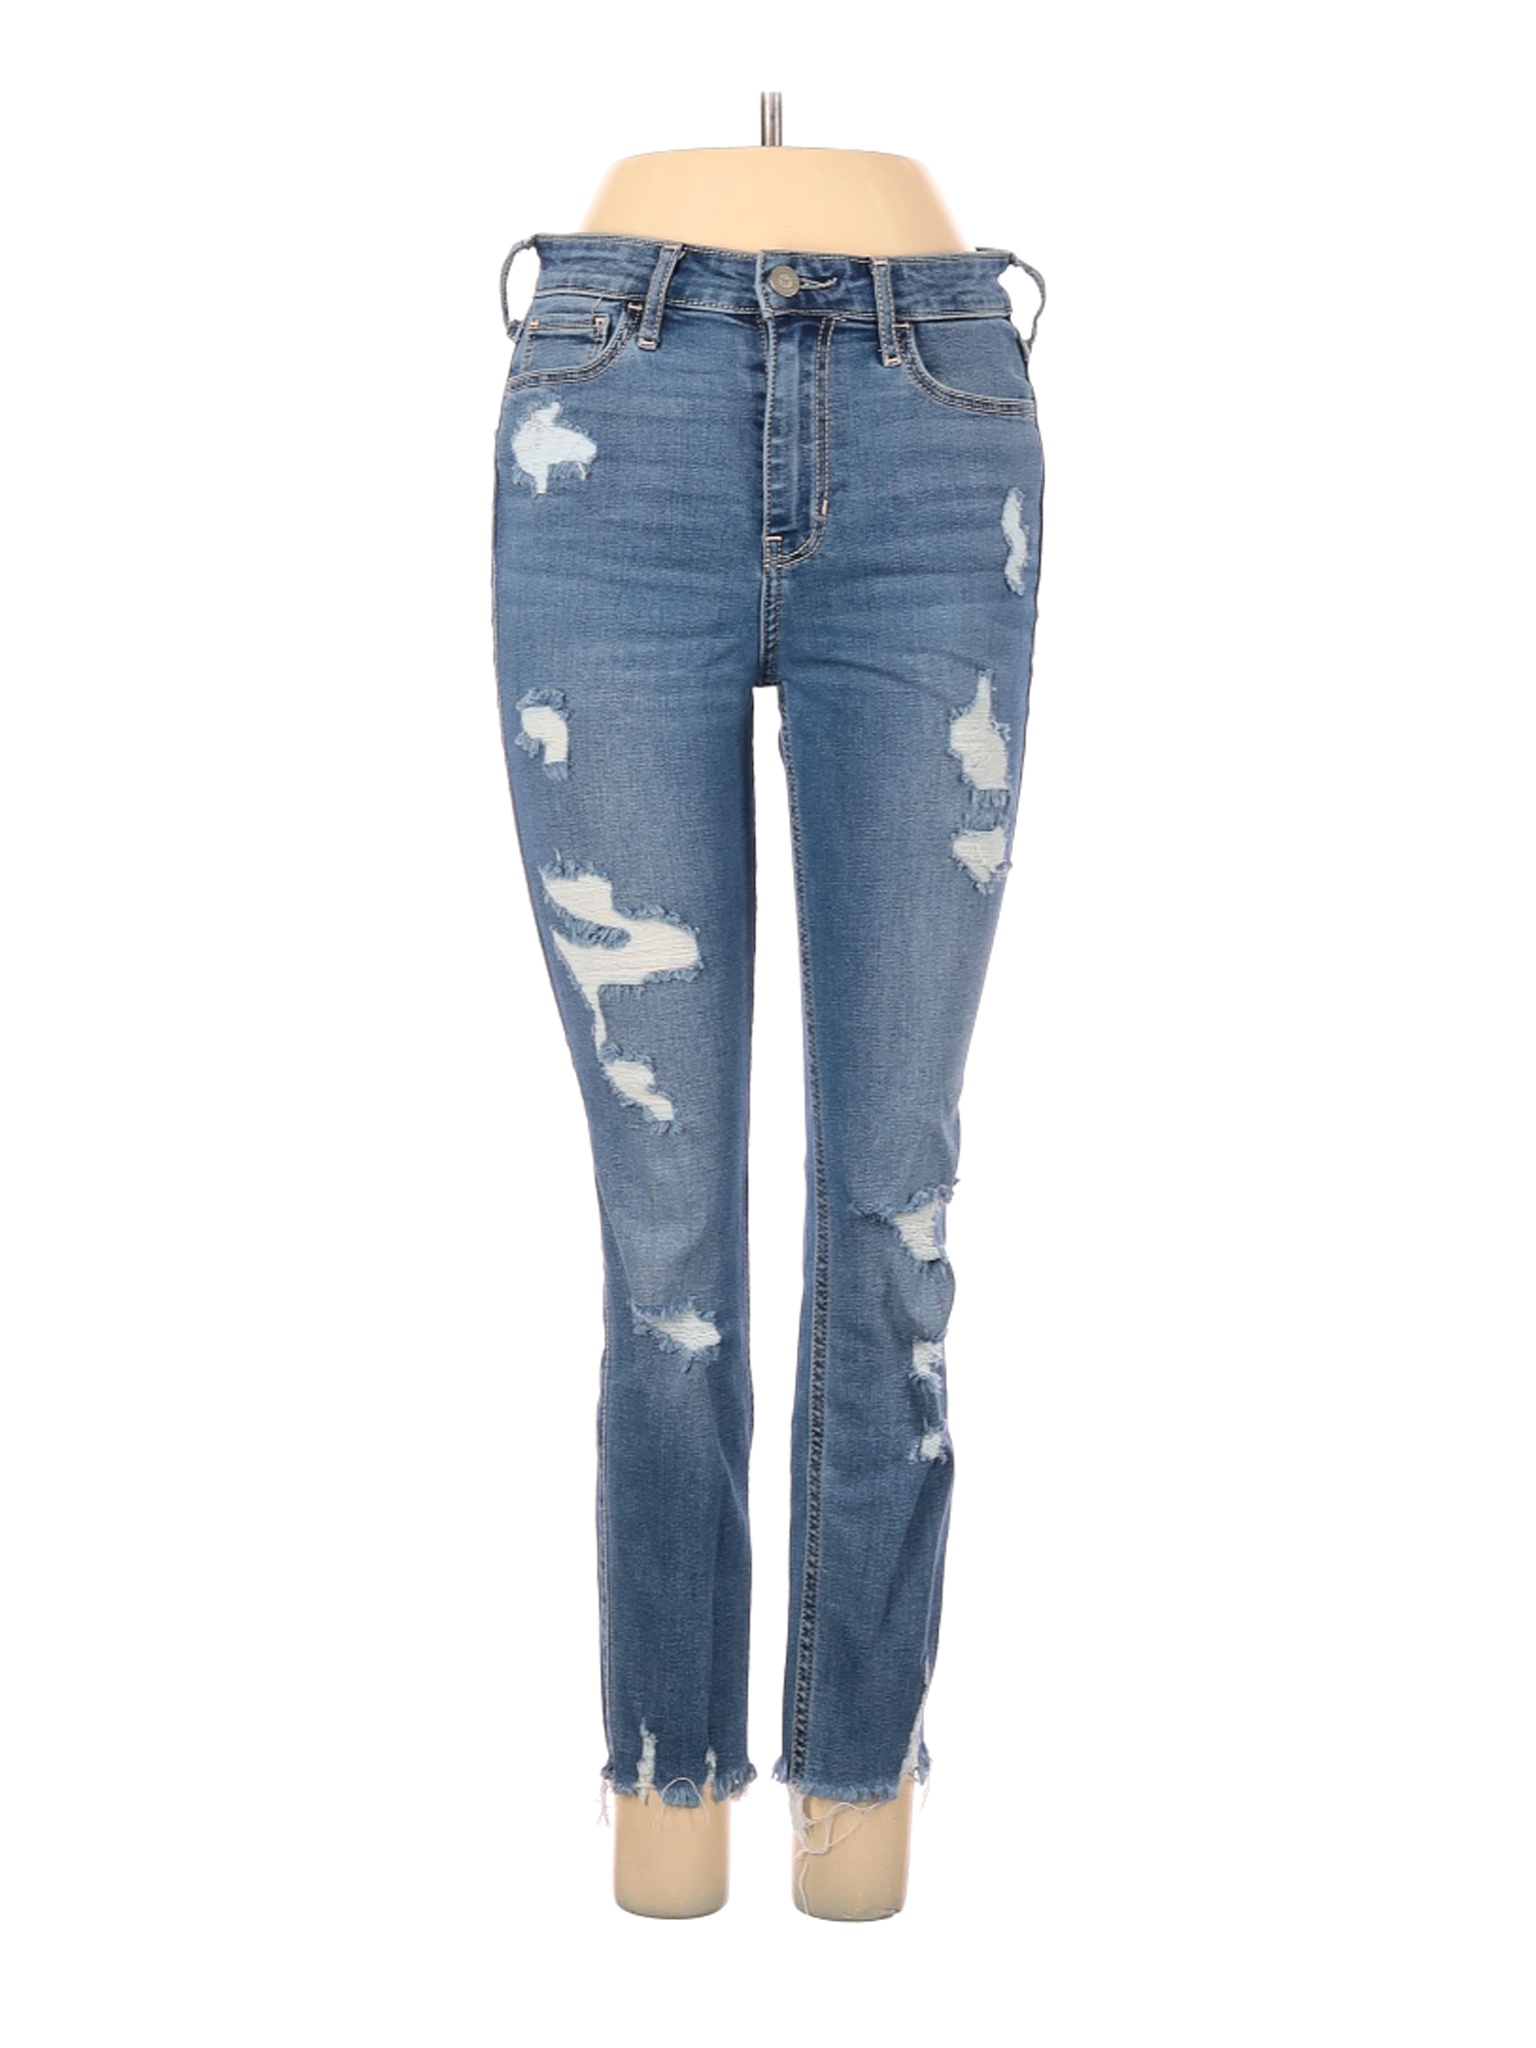 Hollister Women Blue Jeans 25W | eBay